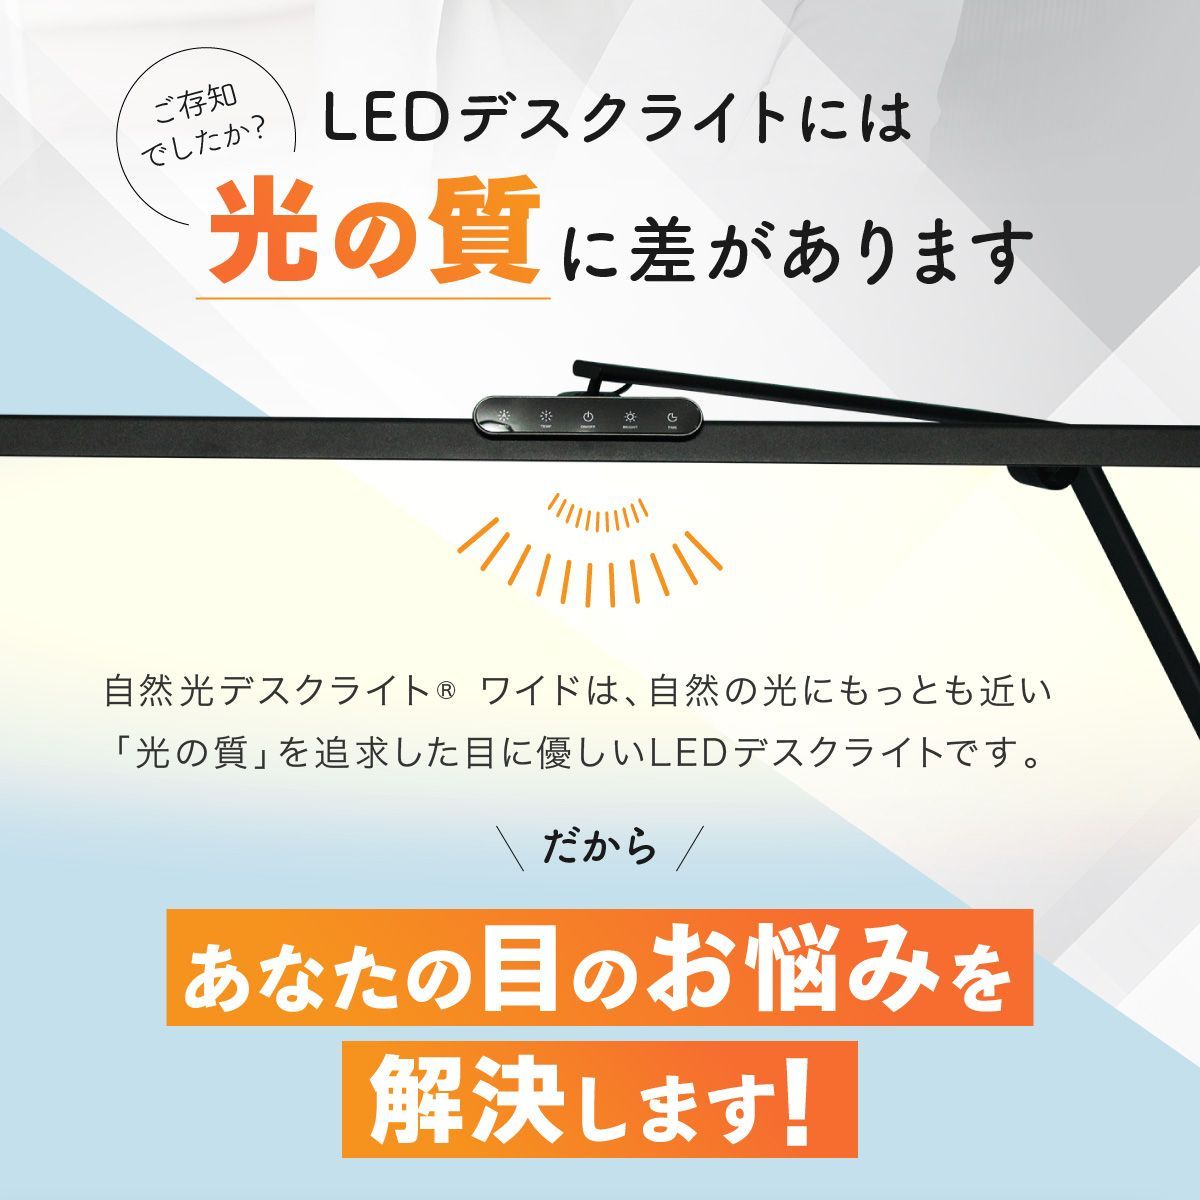 デスクライト LED 【照明士推奨】 目に優しい 自然光デスクライト 